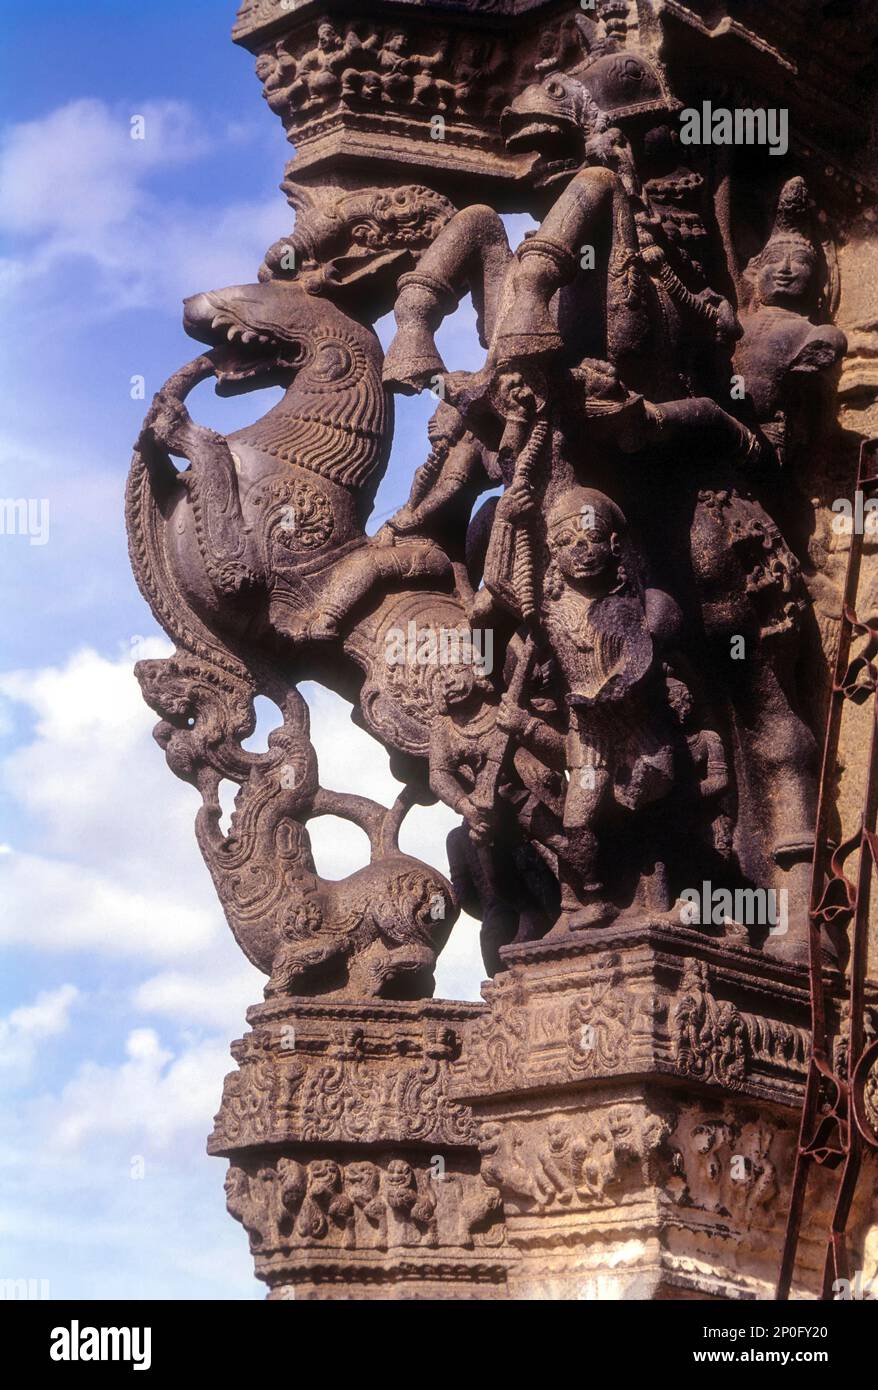 Sculptures exquises dans une salle de cent piliers dans le temple de Varadharaja Perumal à Kancheepuram ou Kanchipuram, Tamil Nadu, Inde, Asie Banque D'Images